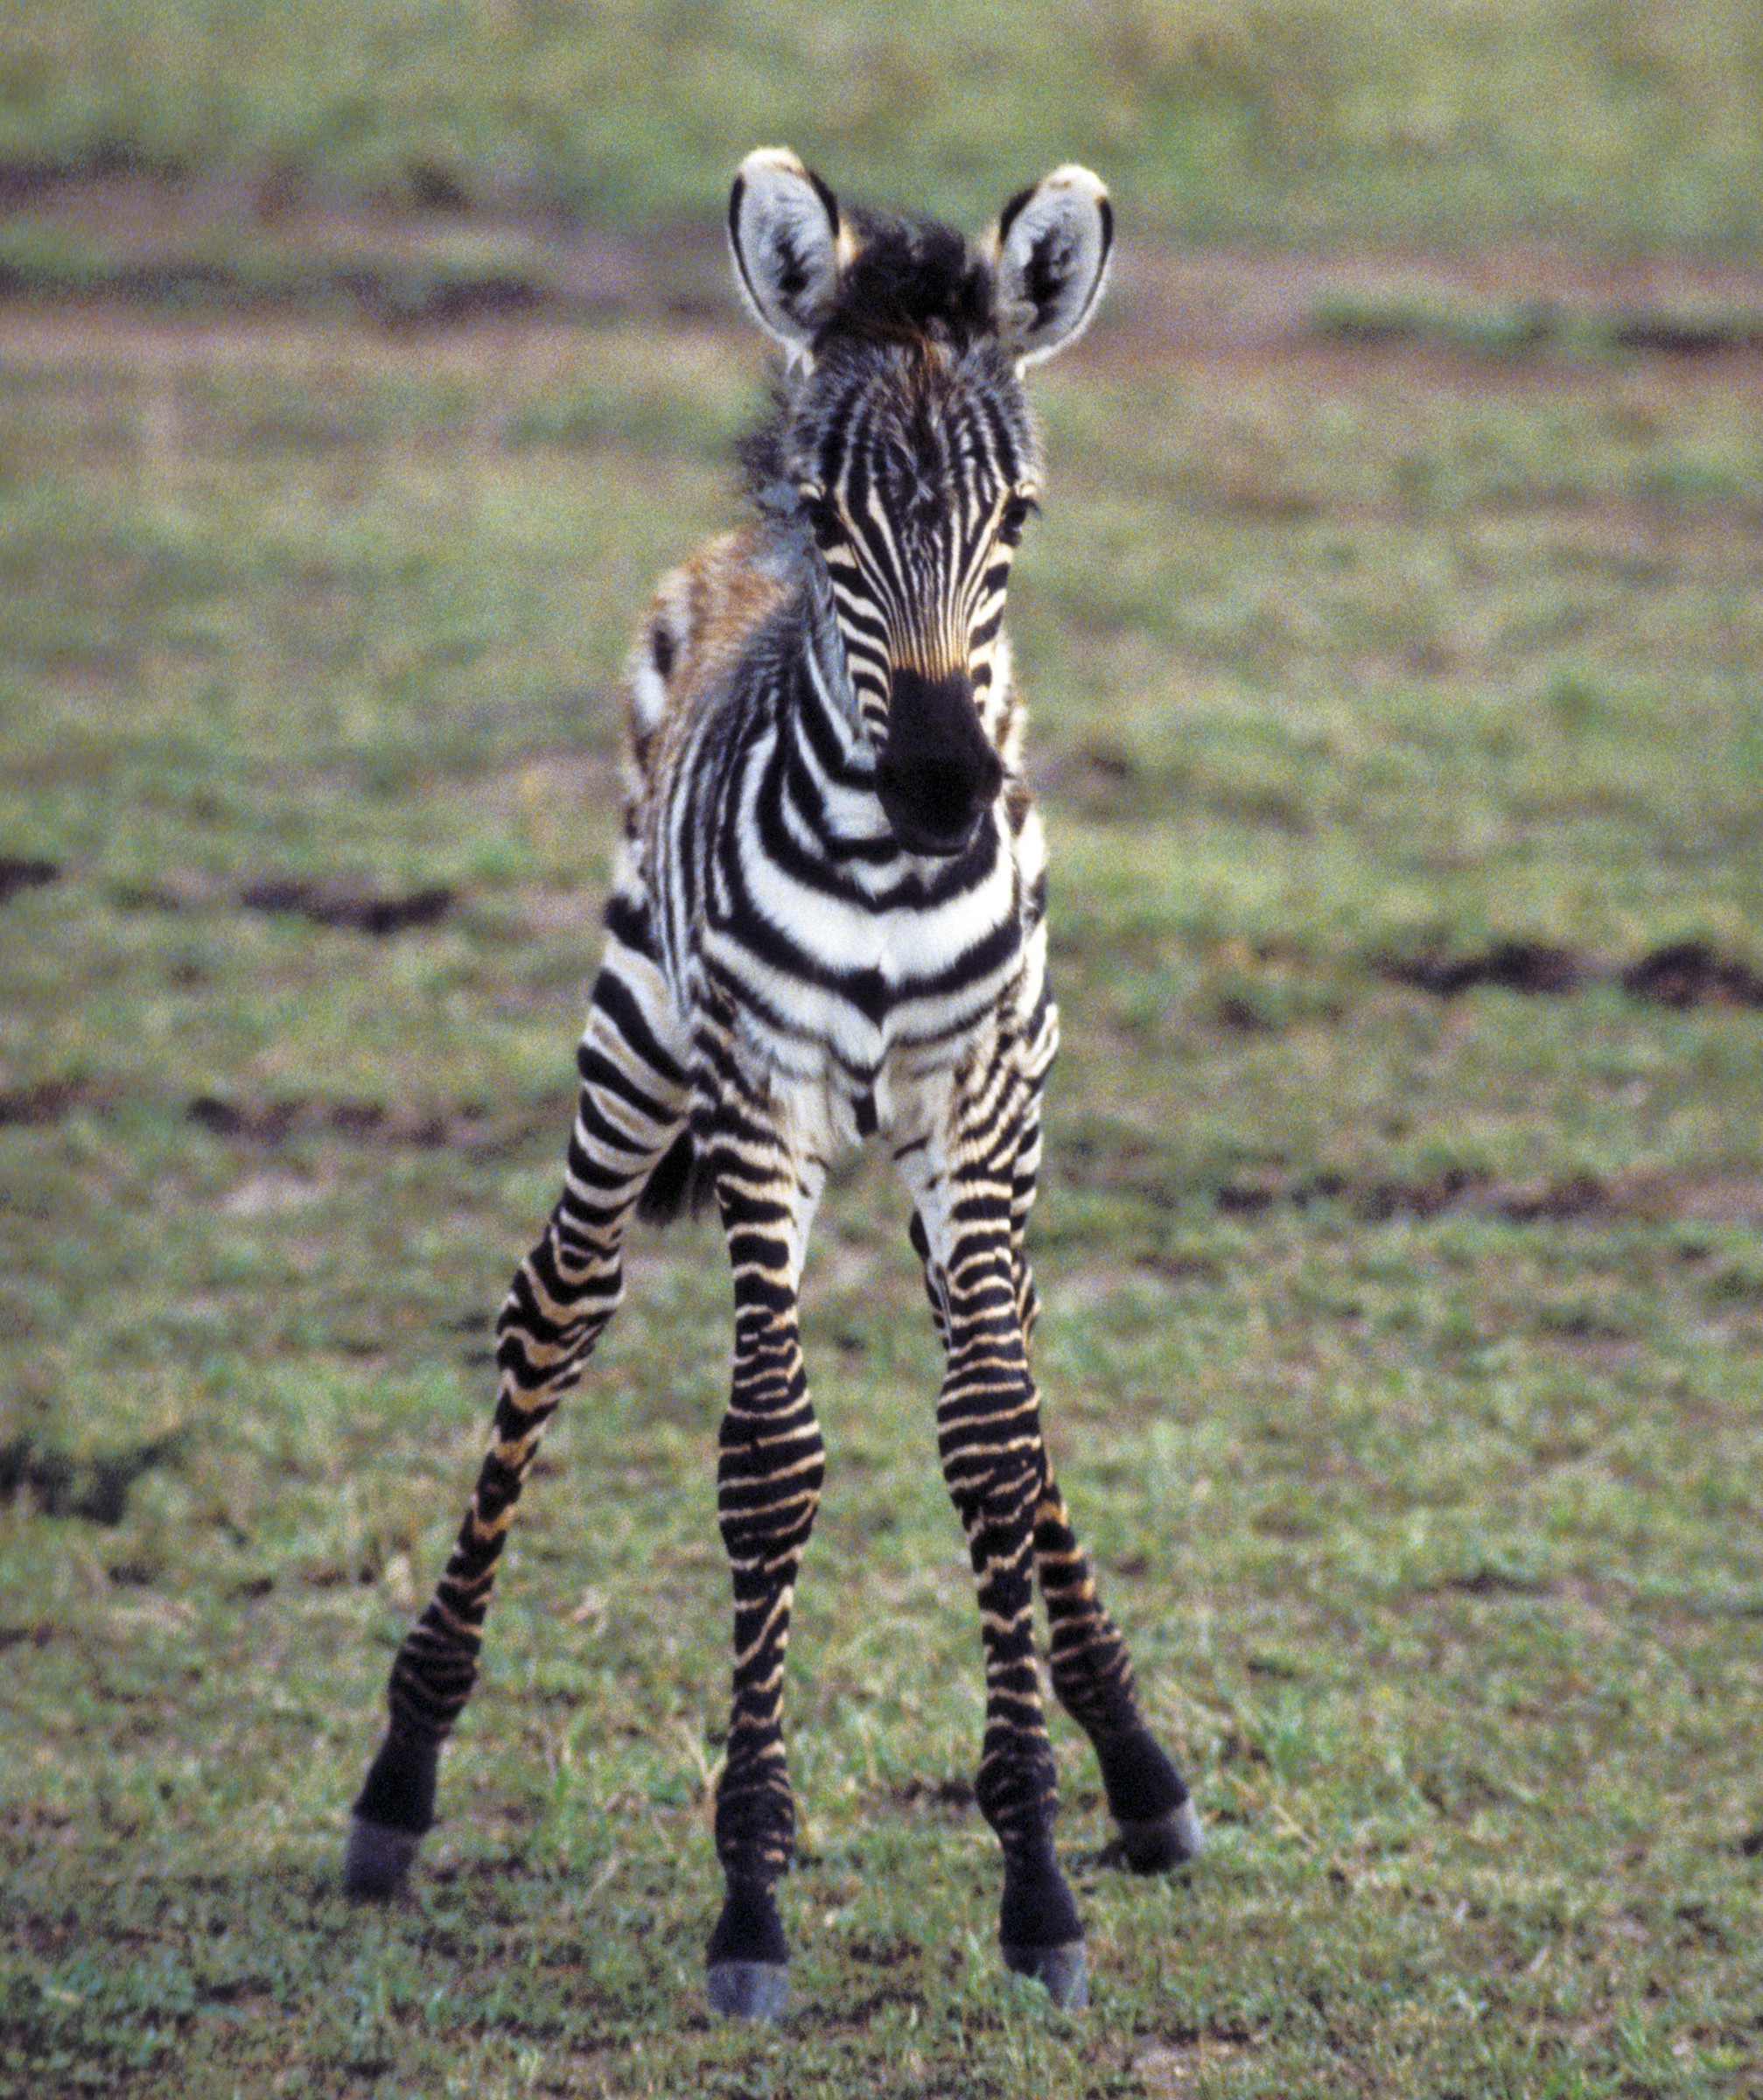 2015x2400 Baby zebra running - photo#27